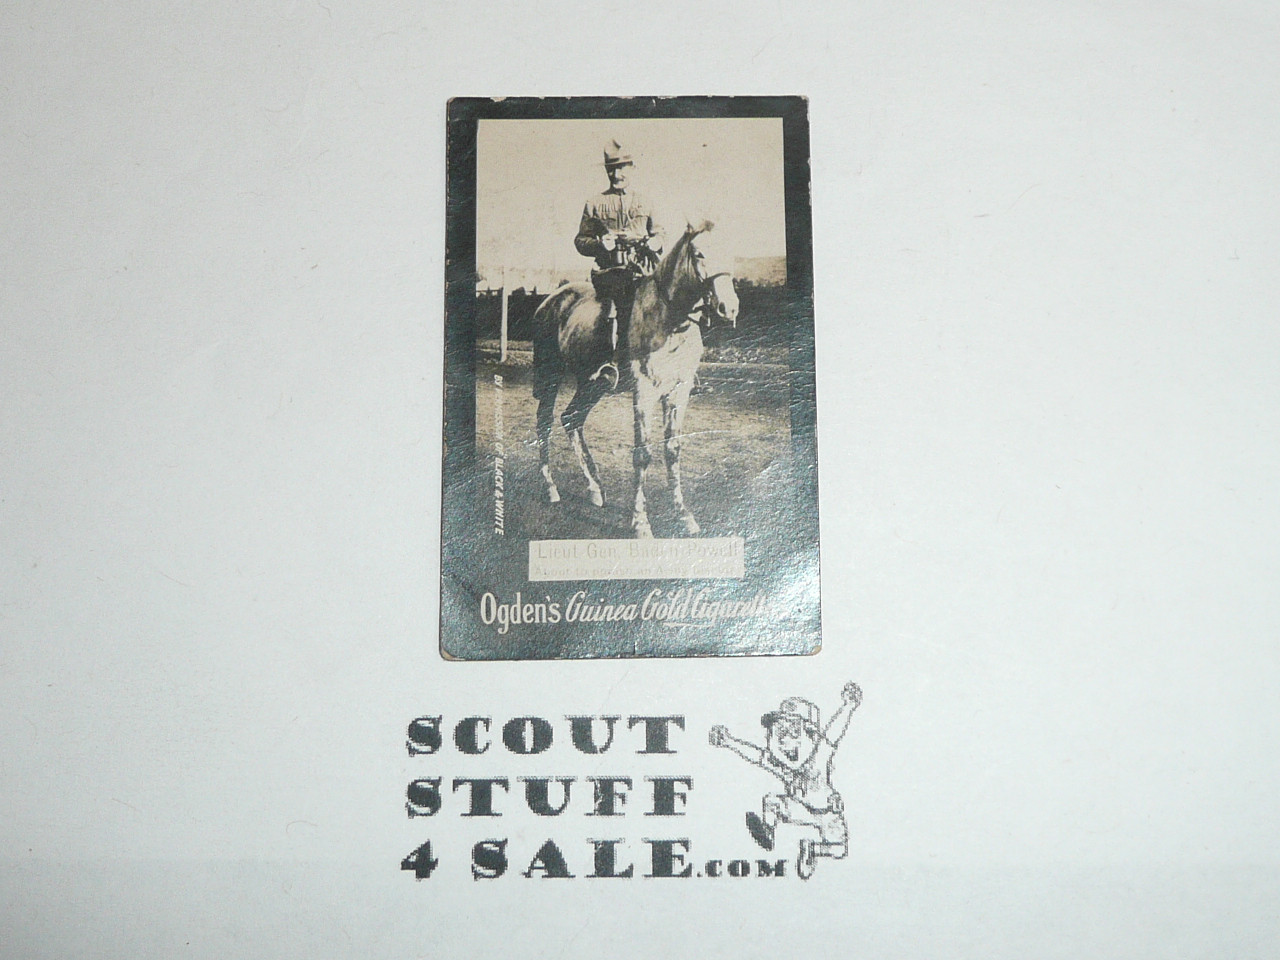 Ogden's Guinea Gold Cigarettes, Lieut. Gen. Baden Powell on horse